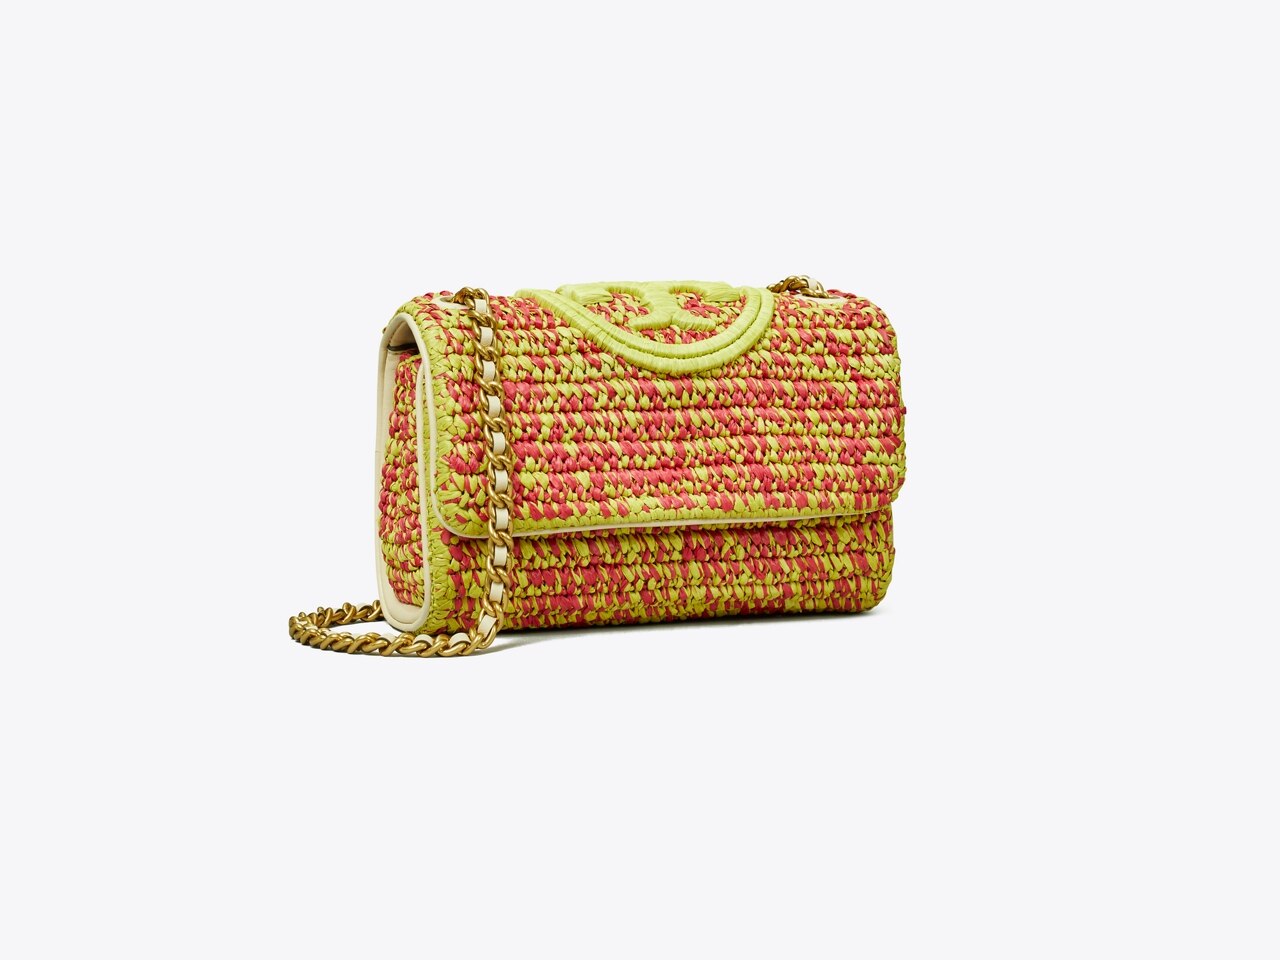 Tory Burch Kira Crochet Convertible Shoulder Bag in Natural